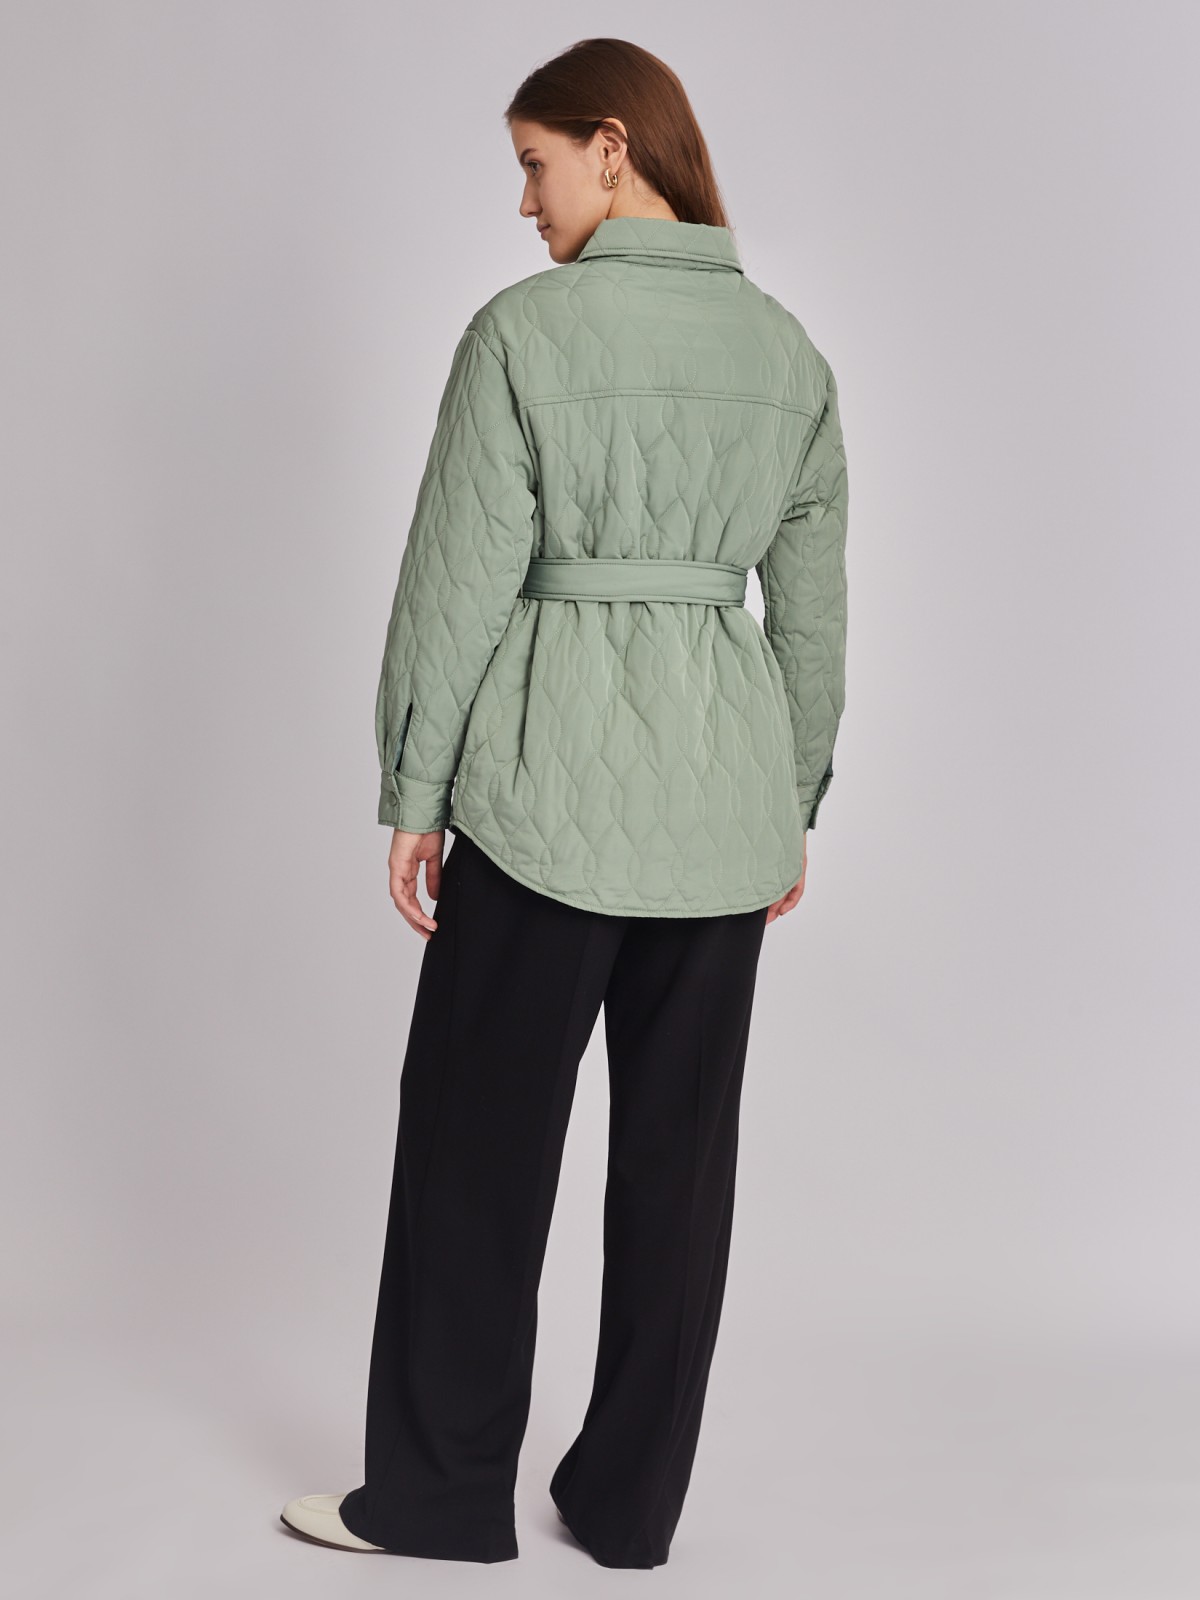 Стёганая куртка-рубашка на синтепоне с поясом zolla 023335102134, цвет хаки, размер XS - фото 5